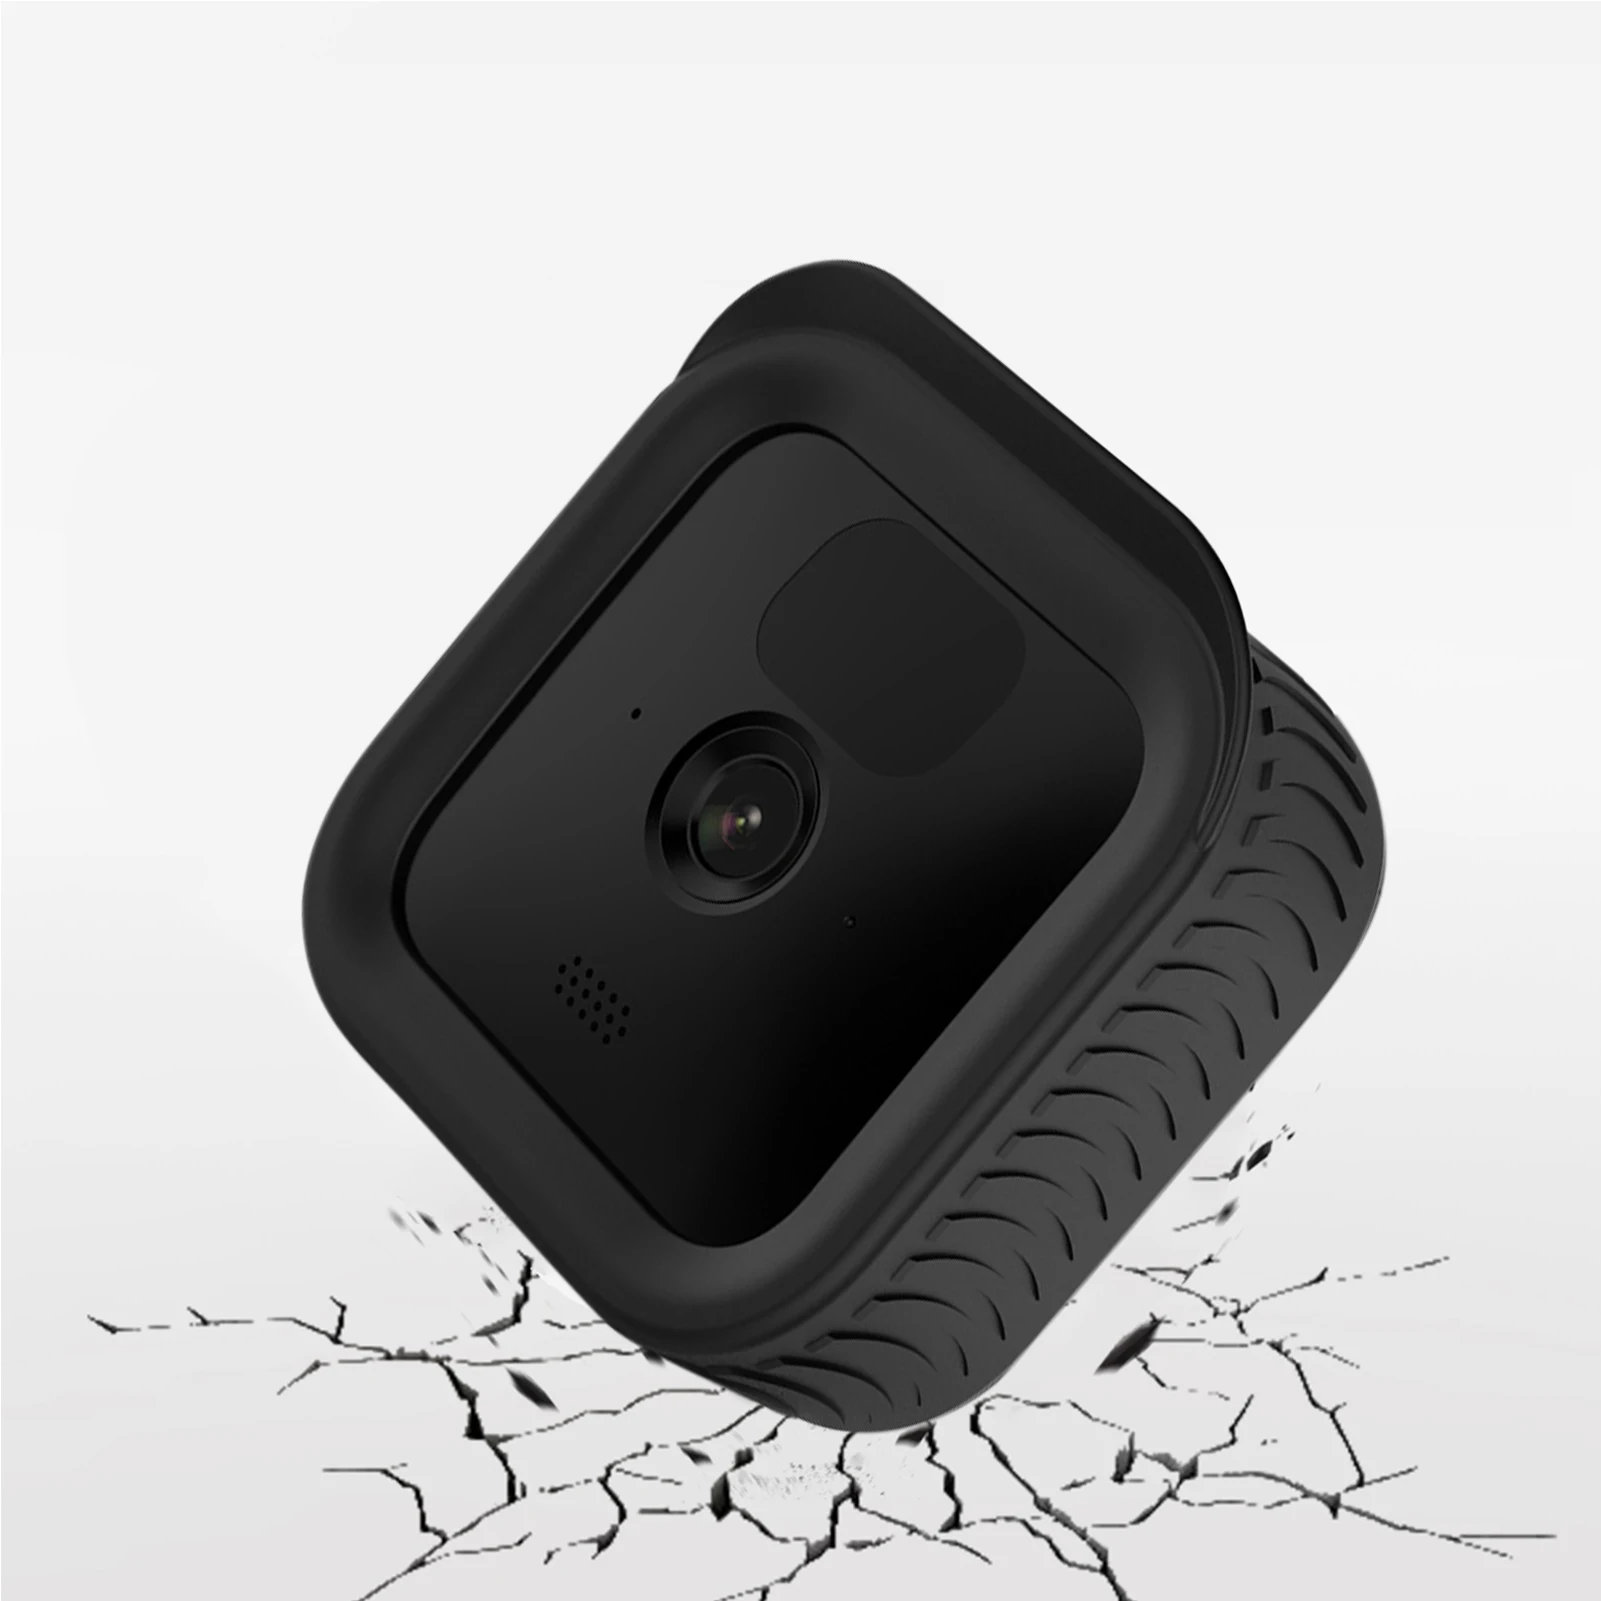 Силиконовый чехол для камеры Blink Outdoor/intdoor защитный водонепроницаемый аксессуары